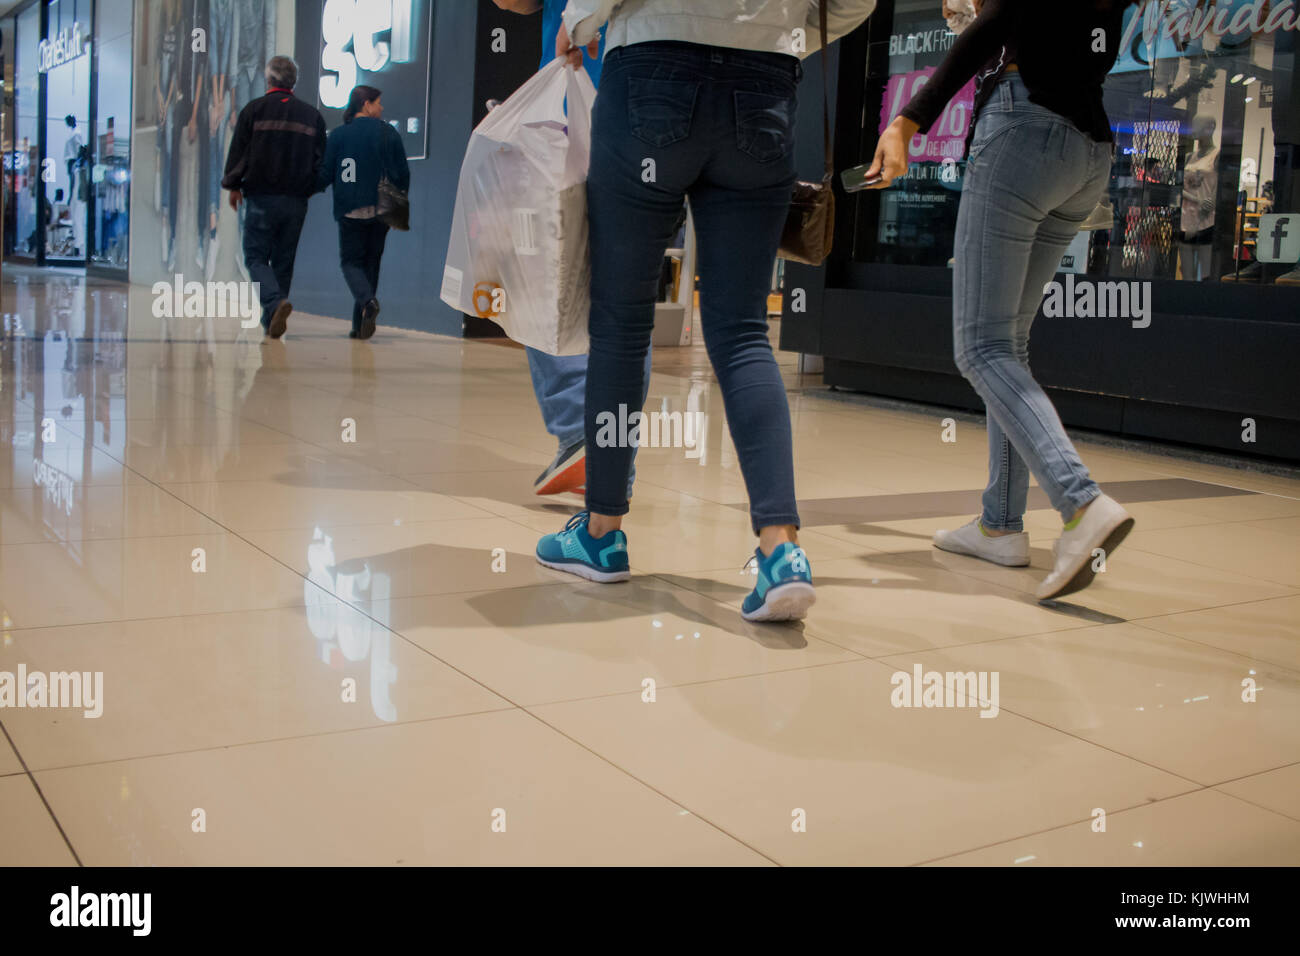 People walking through mall with shopping bags. Personas en centro comercial, bolsas de compras. photo by: Roberto Carlos Sánchez @rosanchezphoto Stock Photo